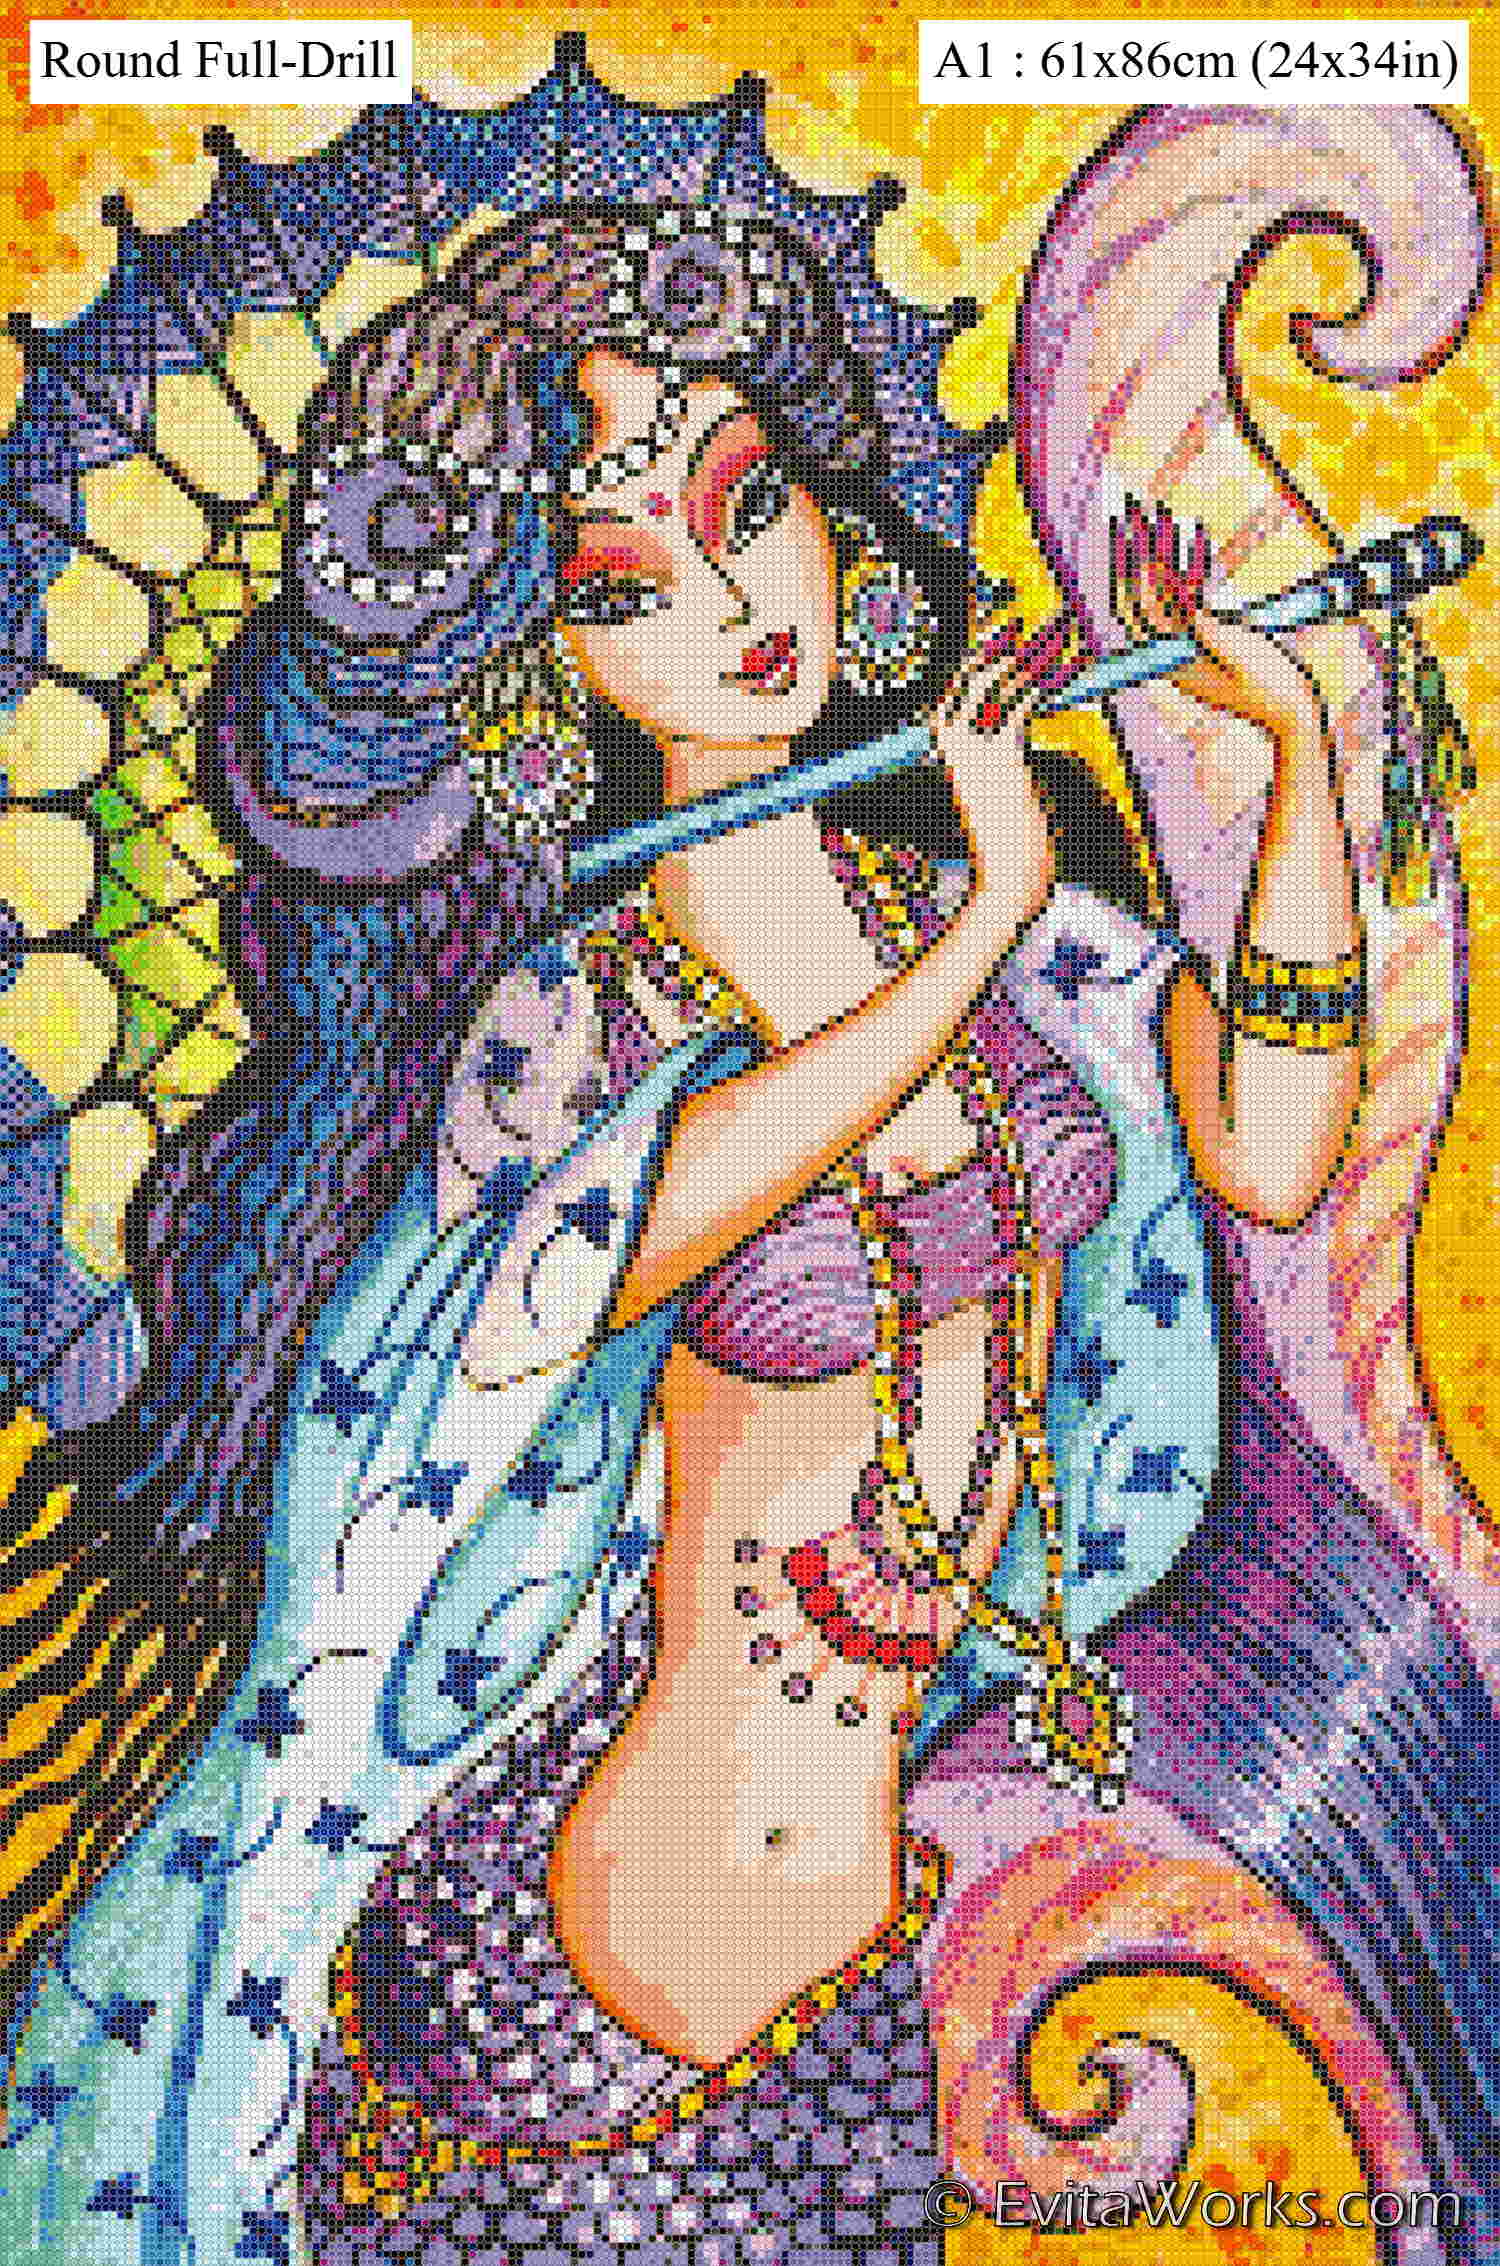 oa mermaid 12 a1rfd ~ EvitaWorks